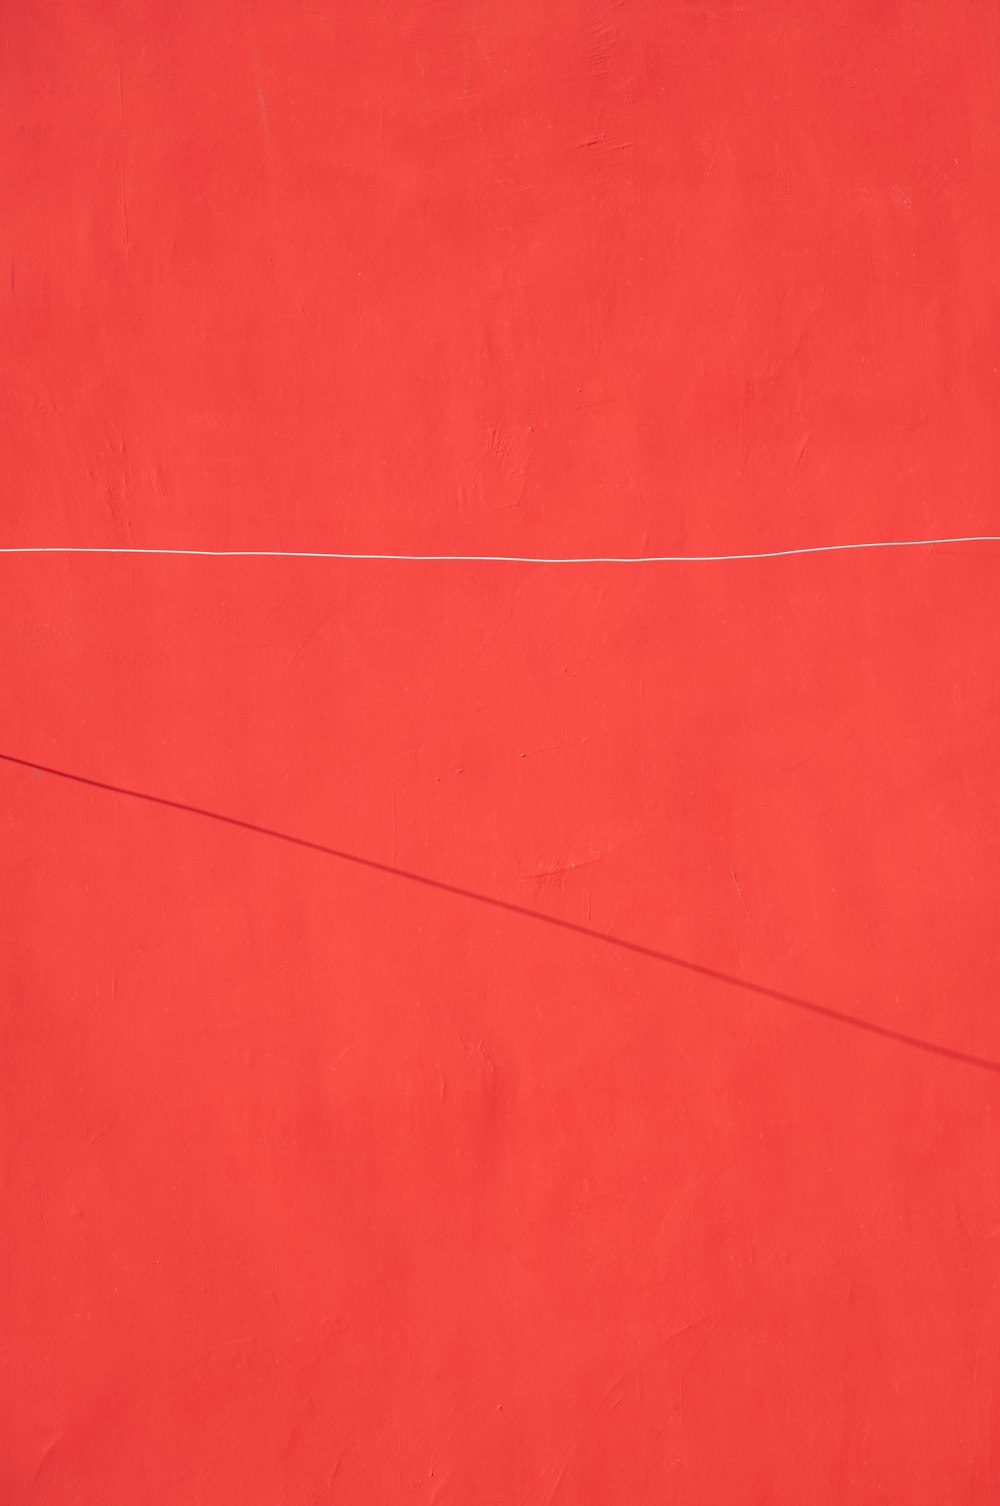 un mur rouge avec une ligne blanche dessus